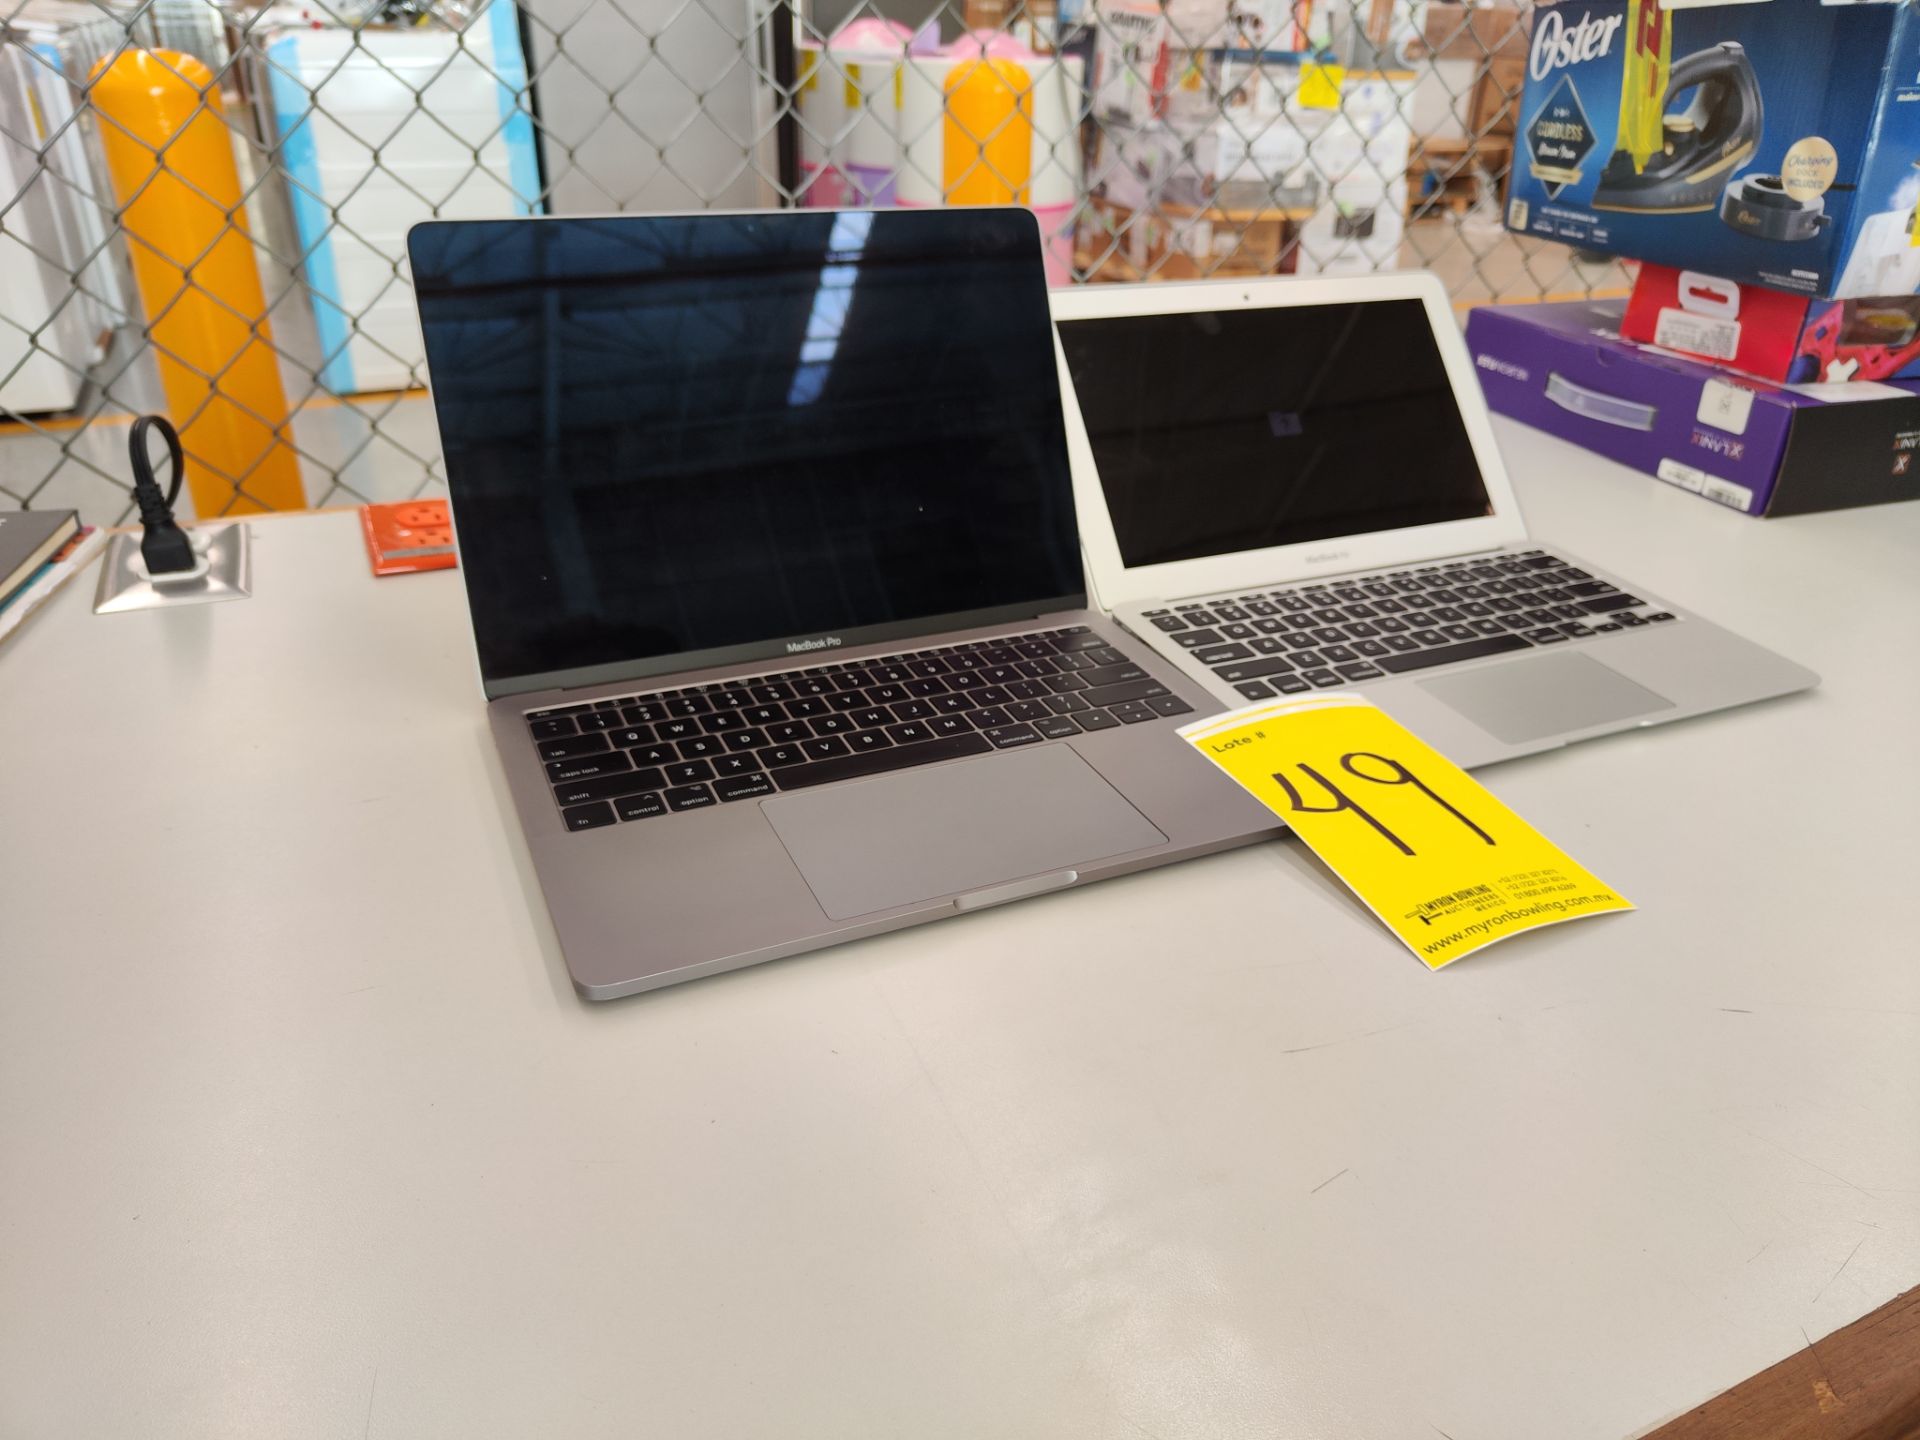 Lote de 2 laptops contiene: 1 MacBook air de 128GB; 1 MacBook pro de 128 GB (No se asegura su funci - Bild 3 aus 7